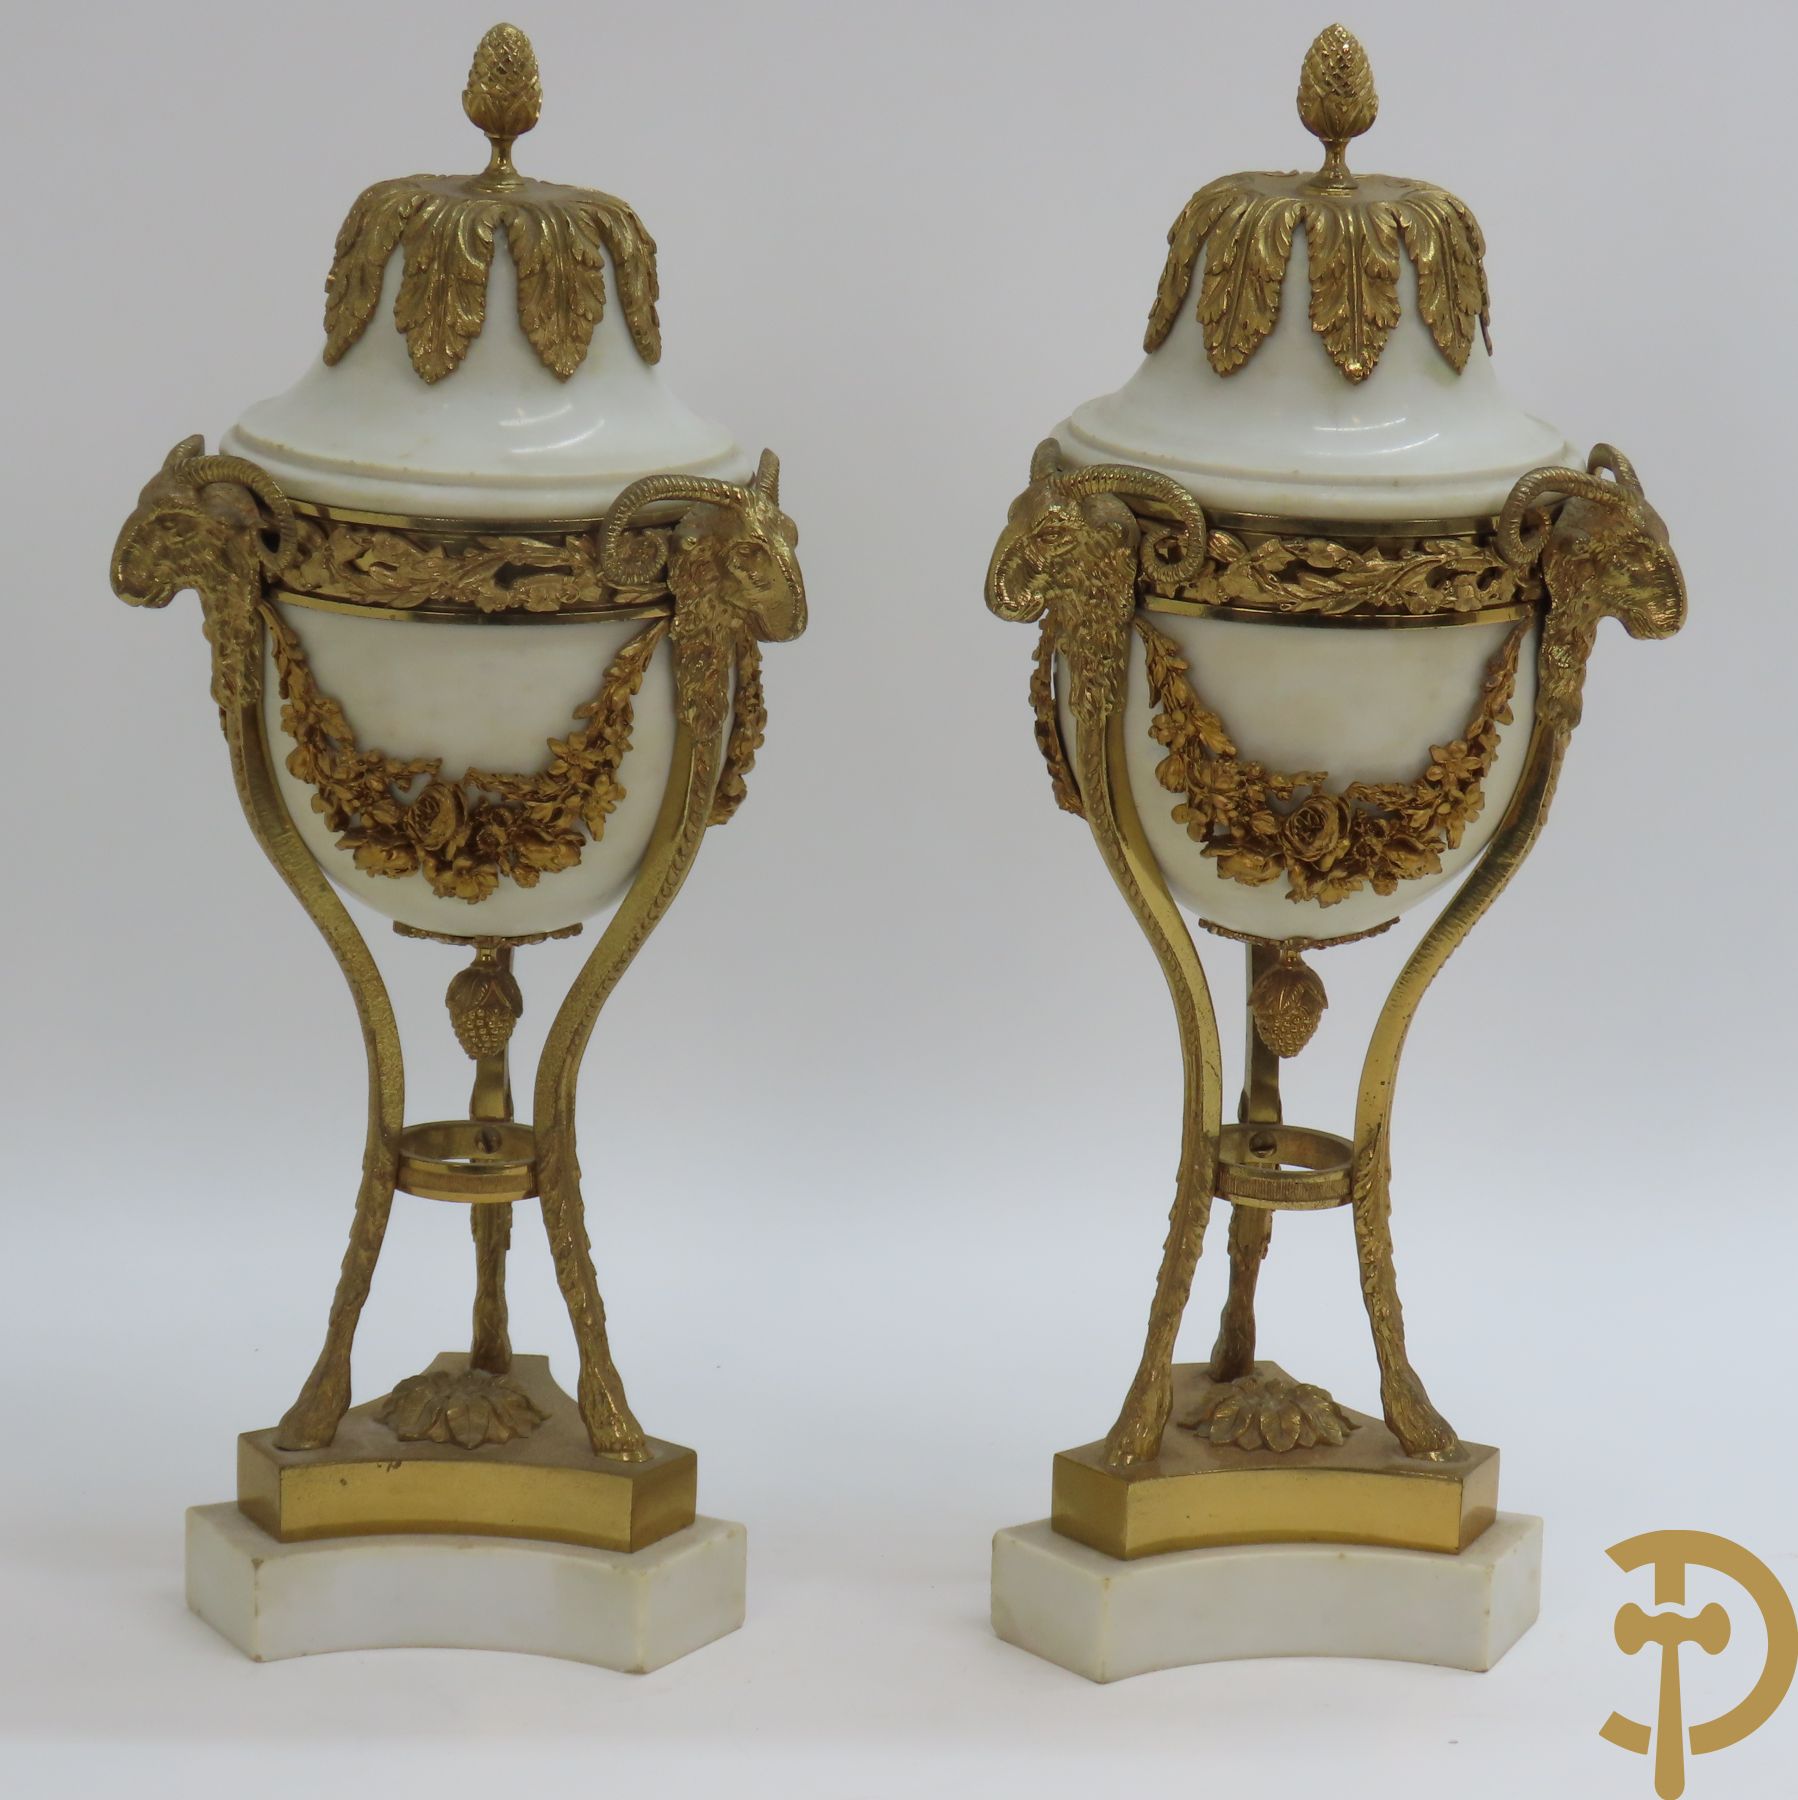 Paar marmeren cassolettes met ramskopen bezet, dragende 3 bloemenguirlandes - bovenaan bezet met denappel